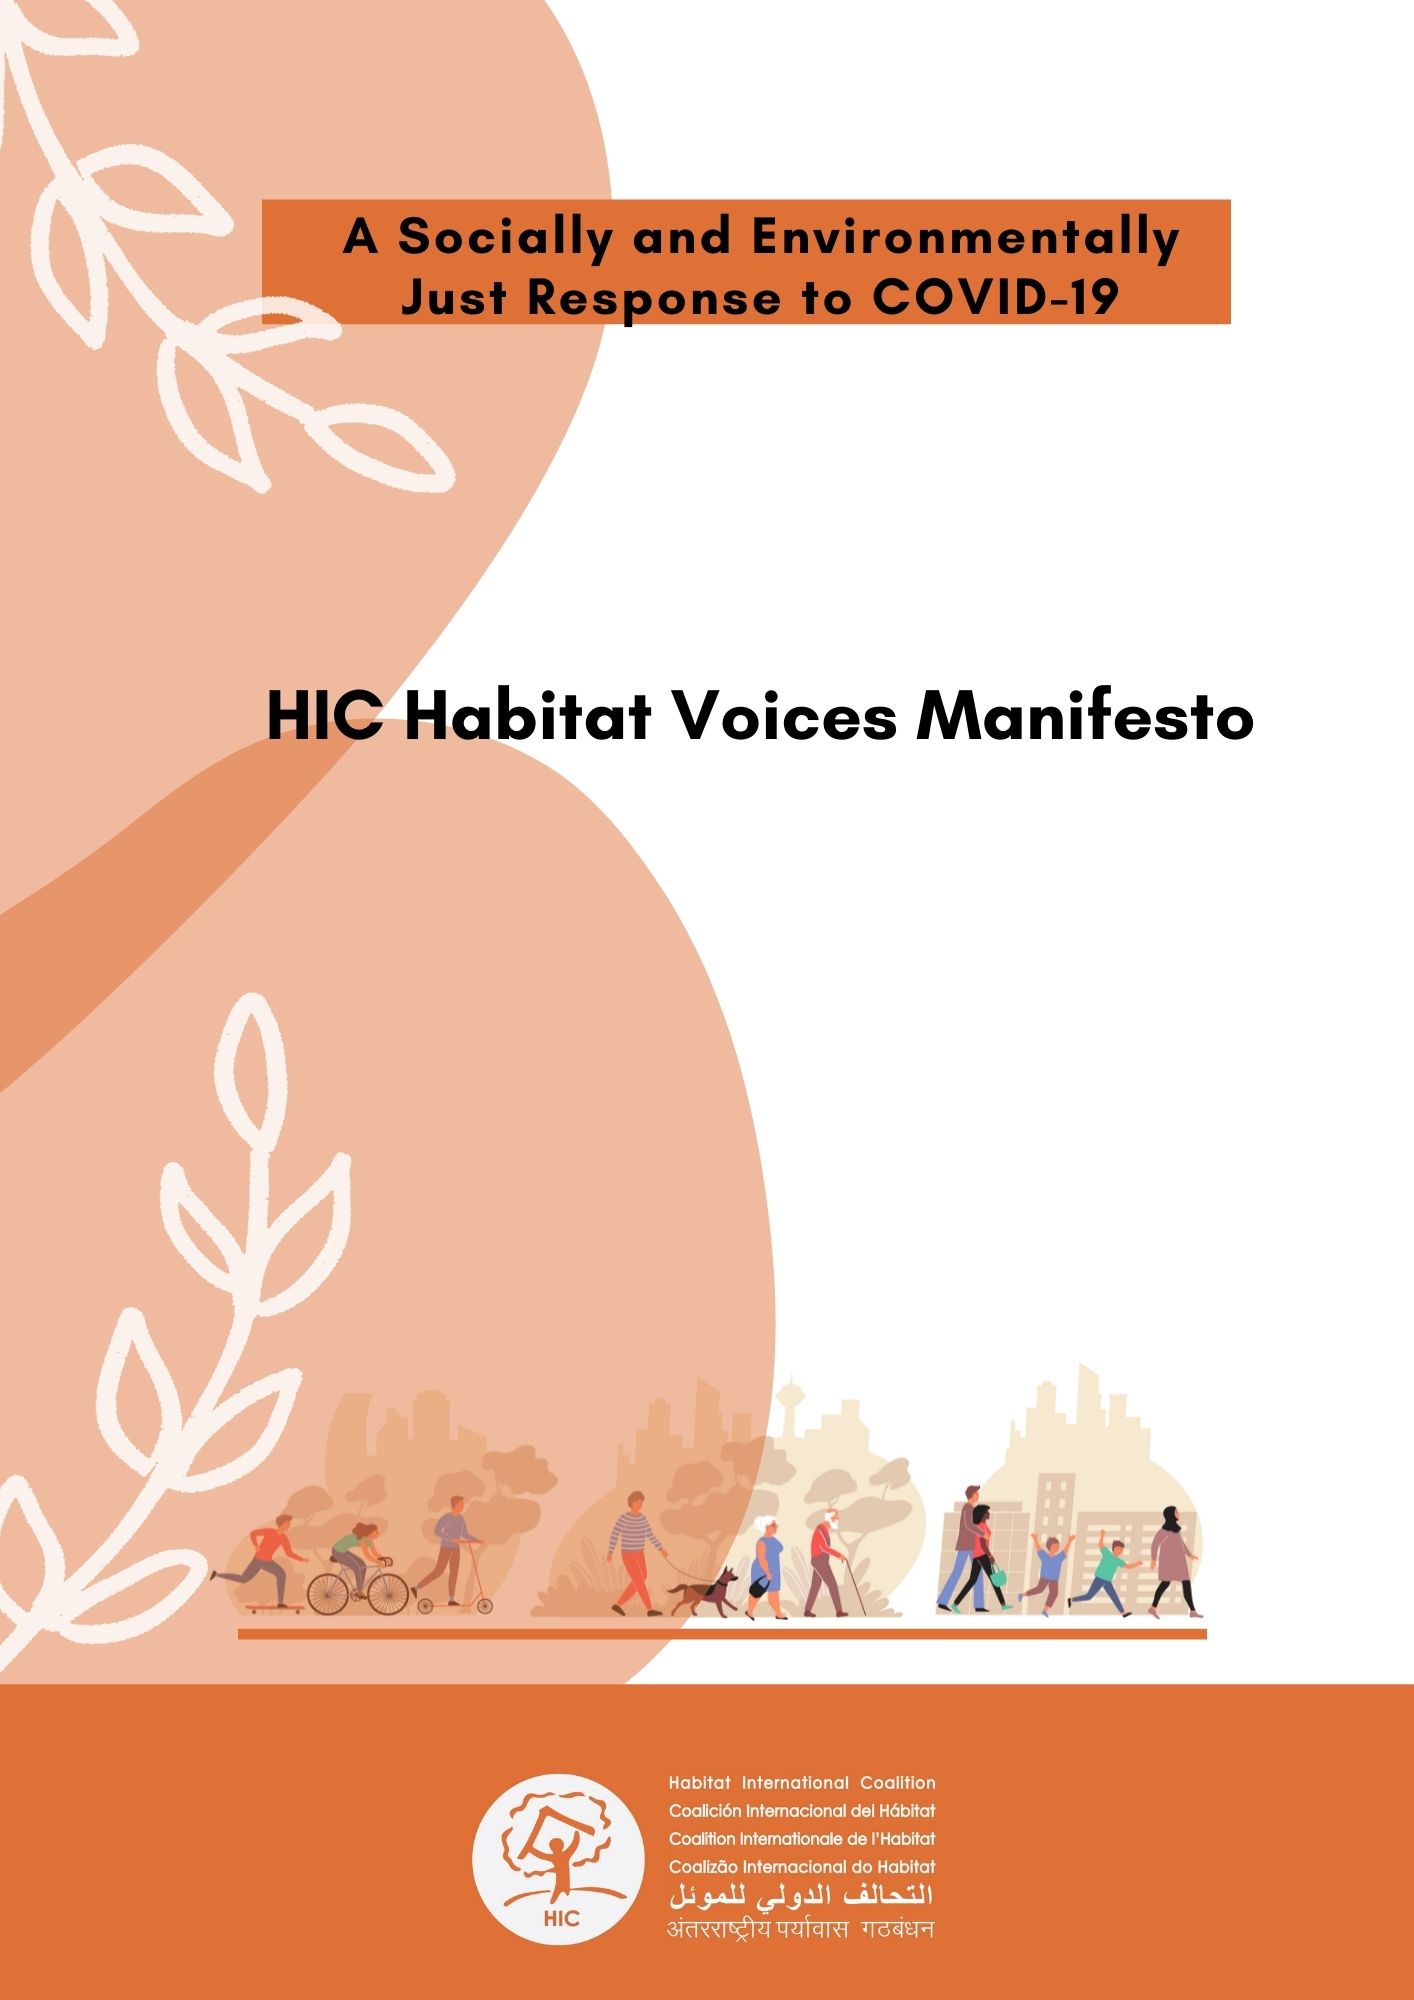 The HIC Habitat Voices Manifesto